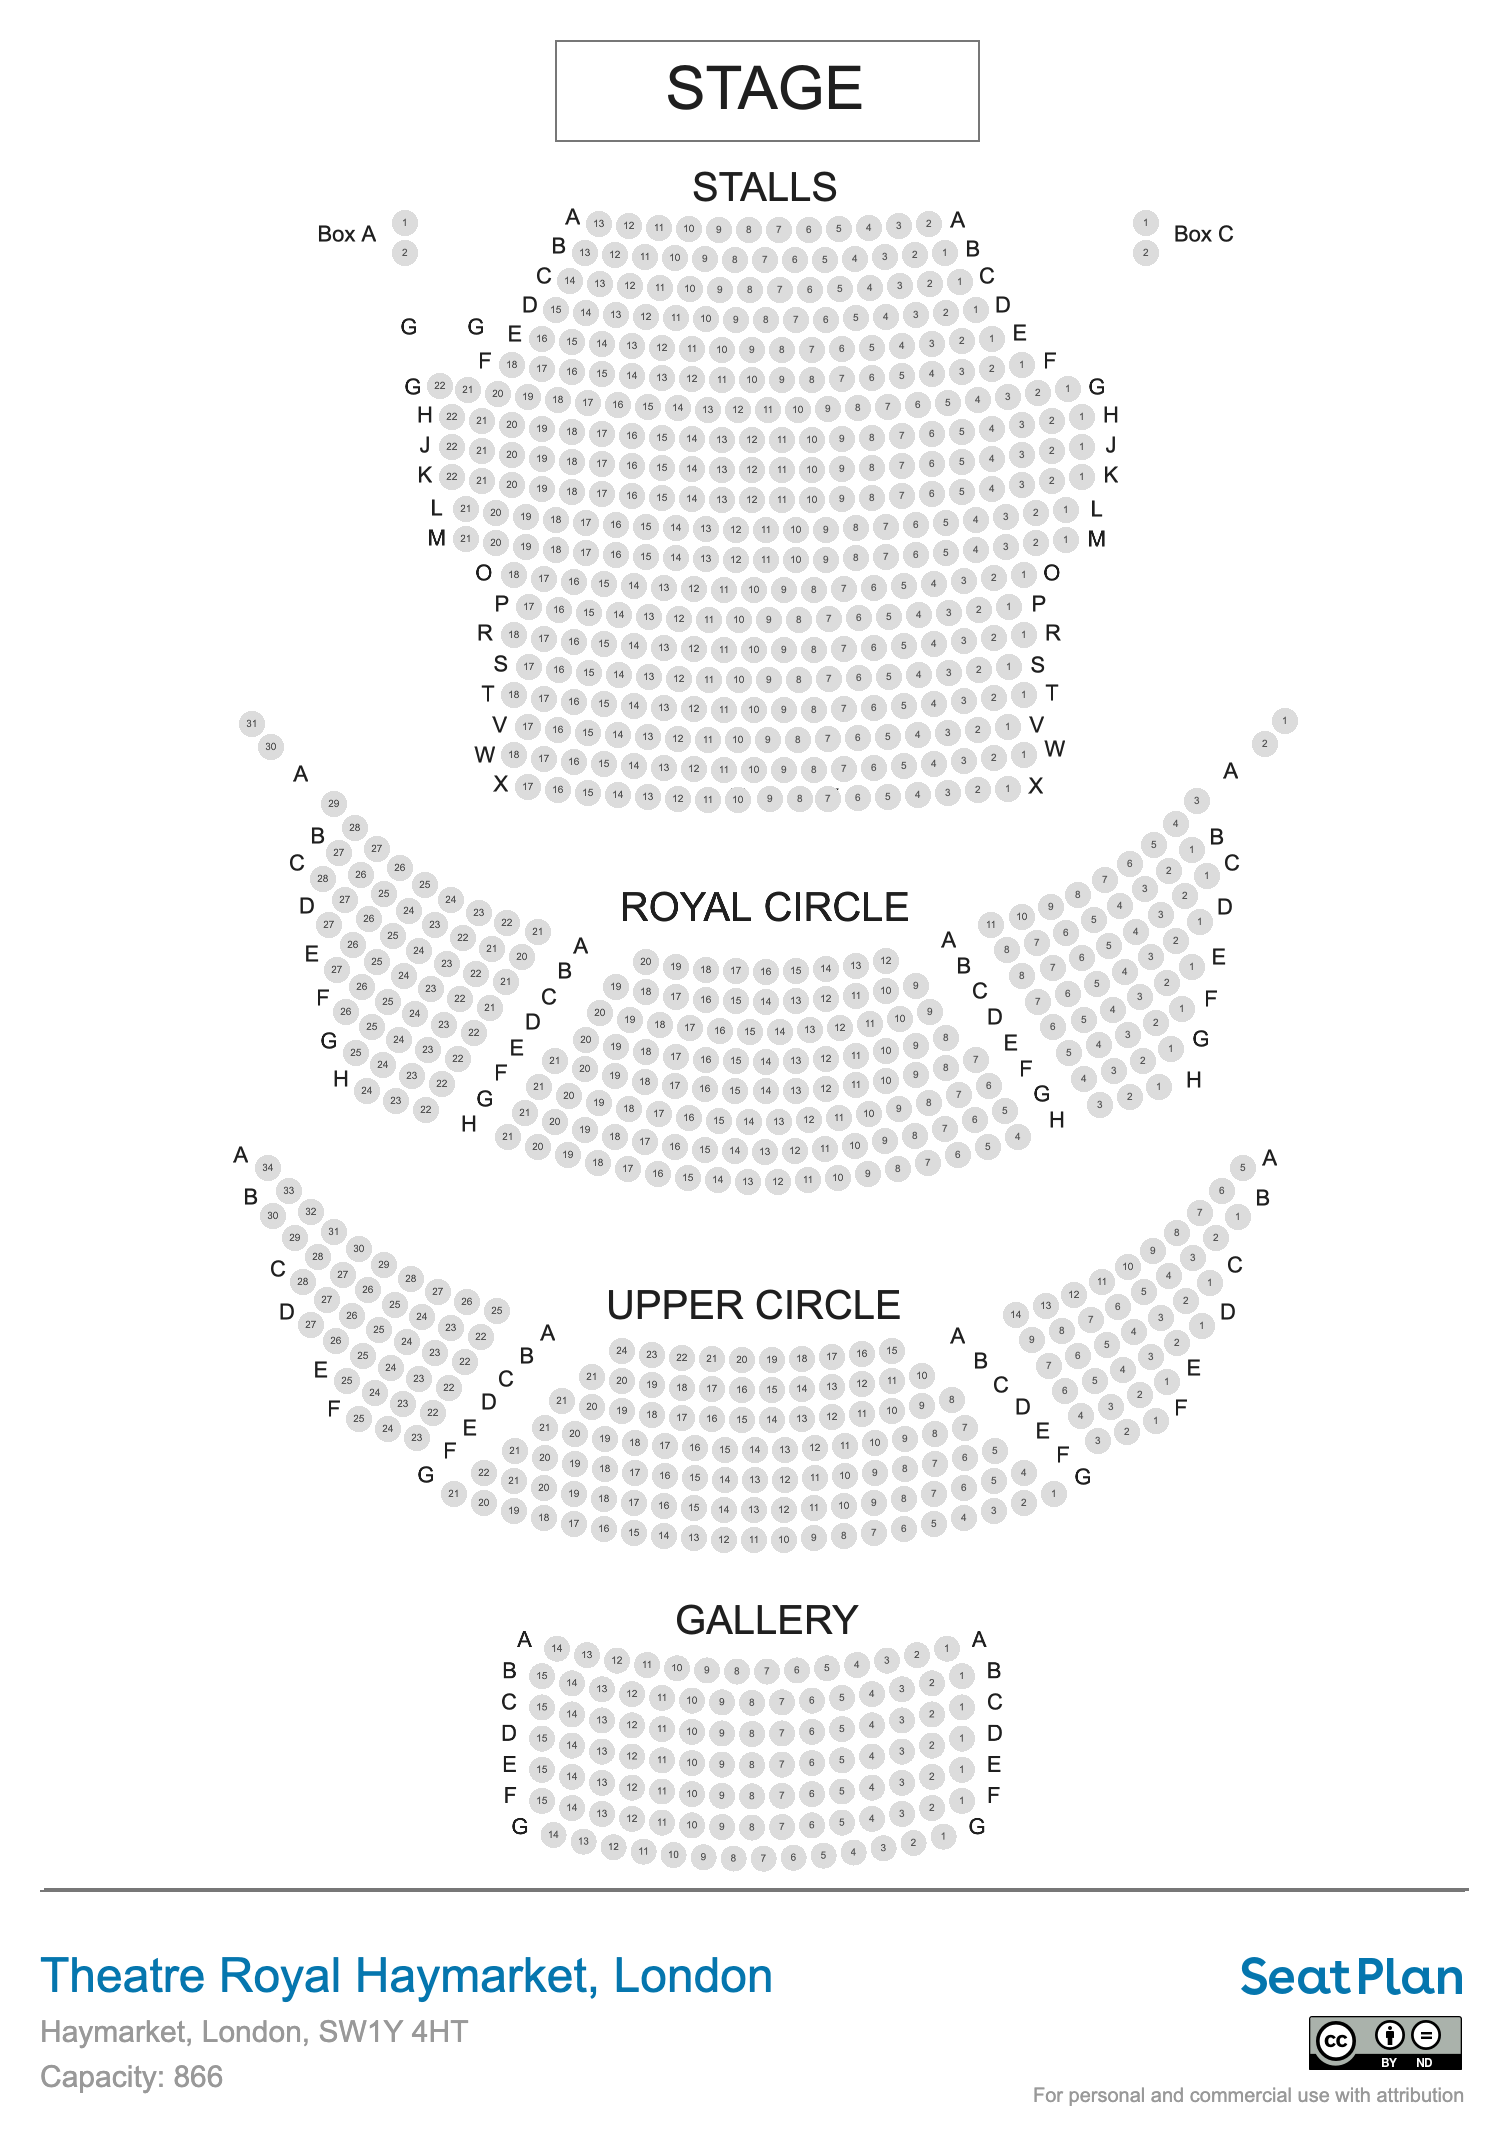 Theatre Royal Haymarket seating plan